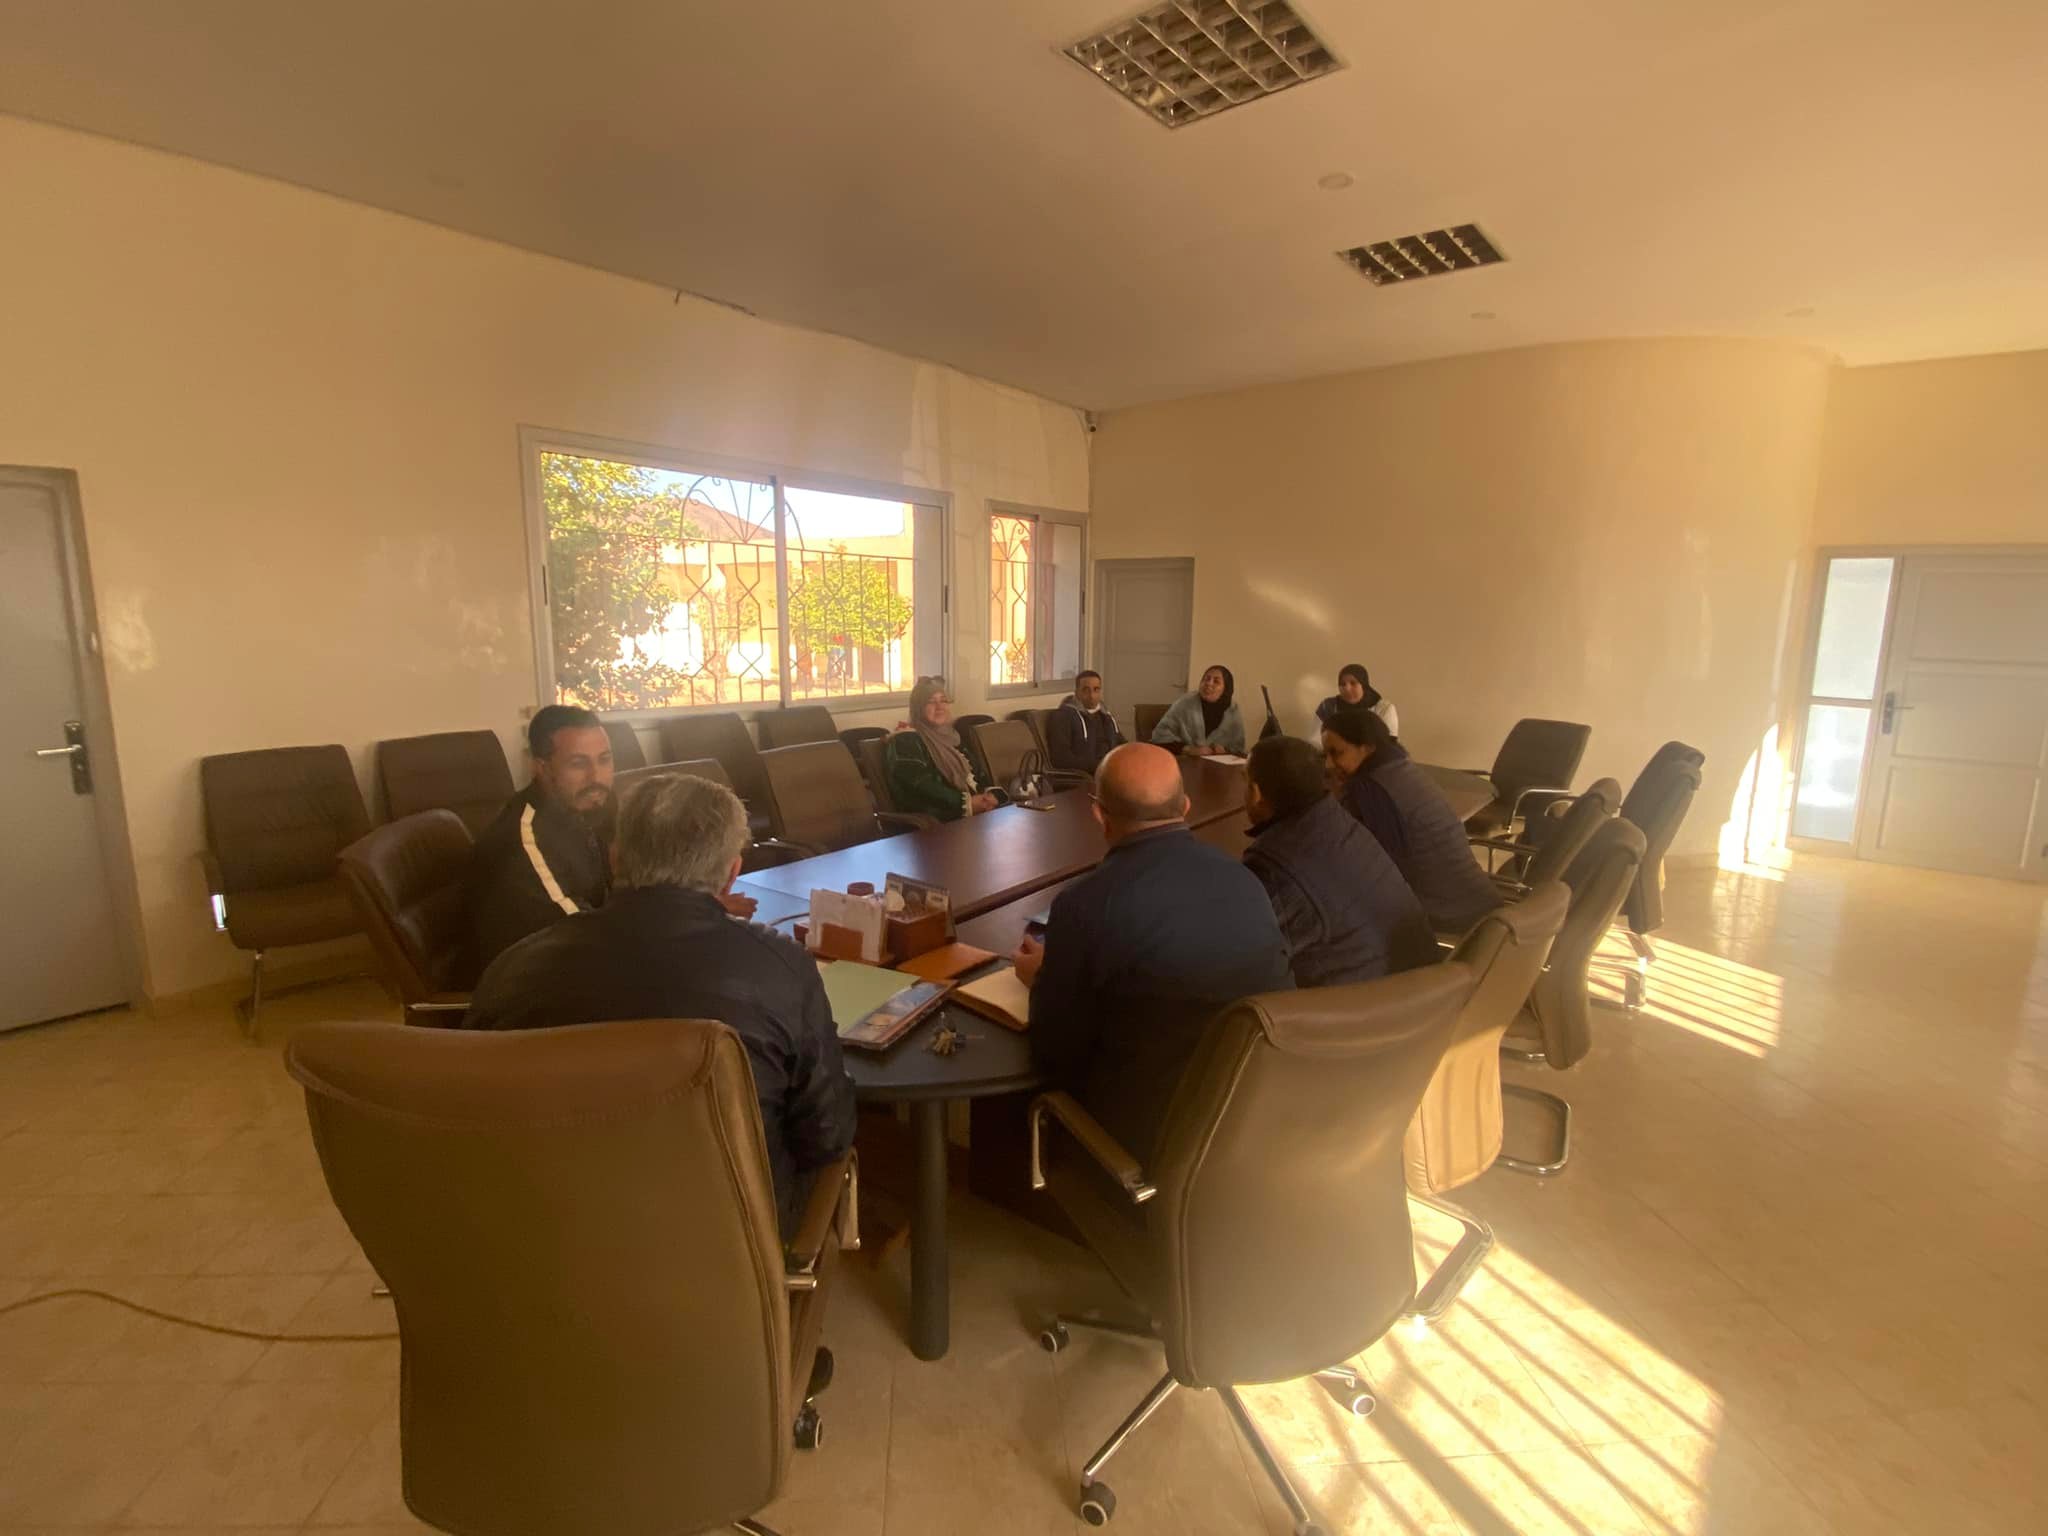 Réunion de suivi entre la commune de Ras Ain Rhamna et l’équipe d’IMADEL afin de confirmer la continuité des activités programmées dans le cadre du projet JUSUR.